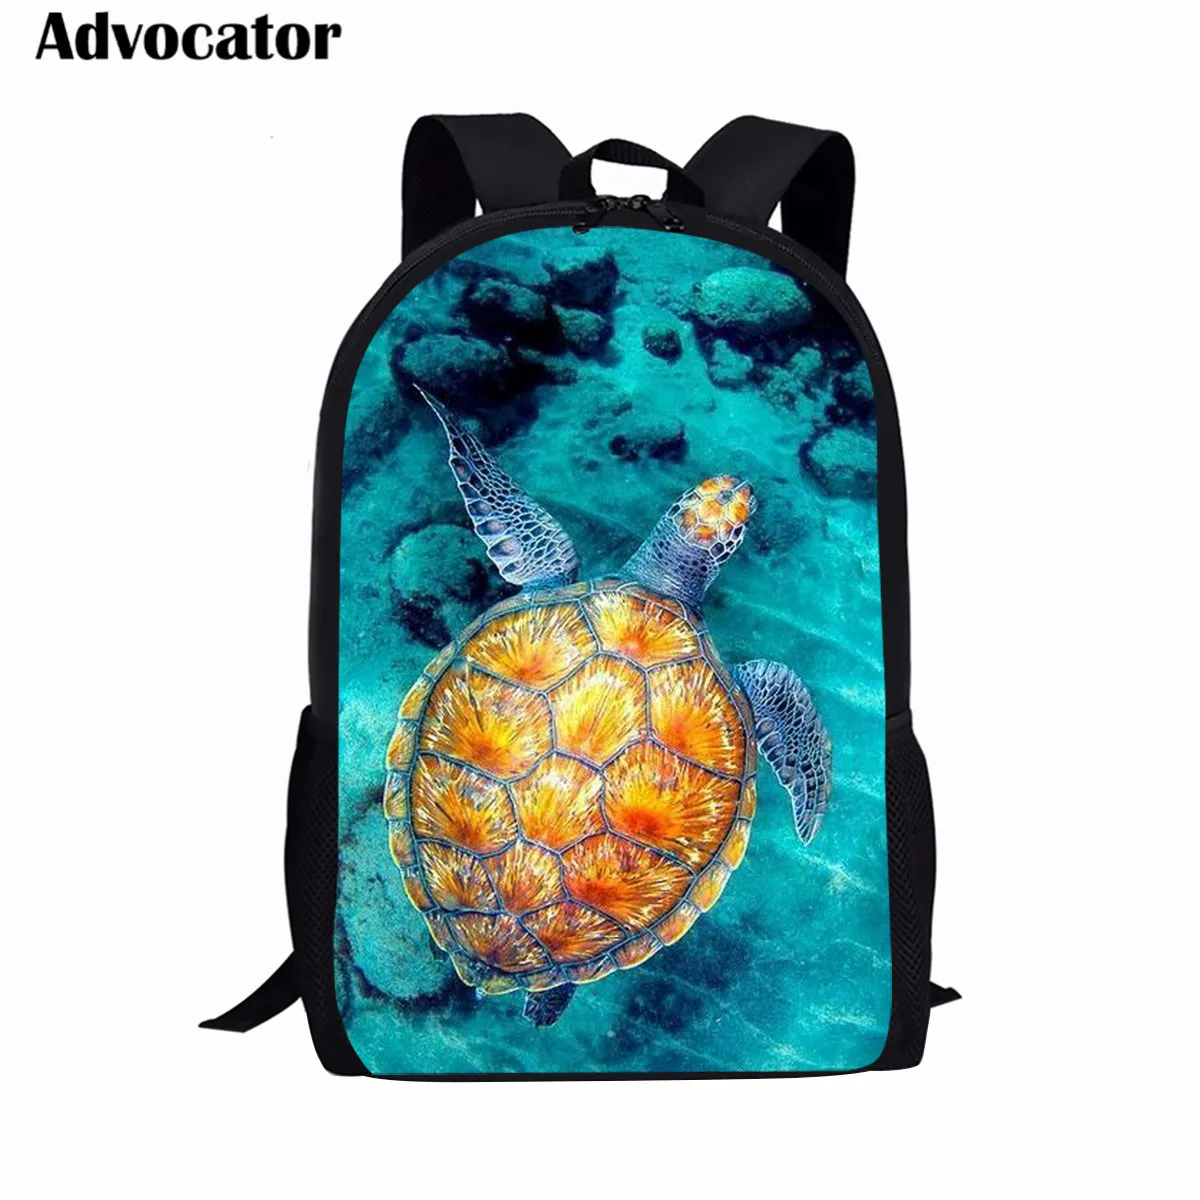 Рюкзак с принтом морской черепахи для подростков, большой вместимости